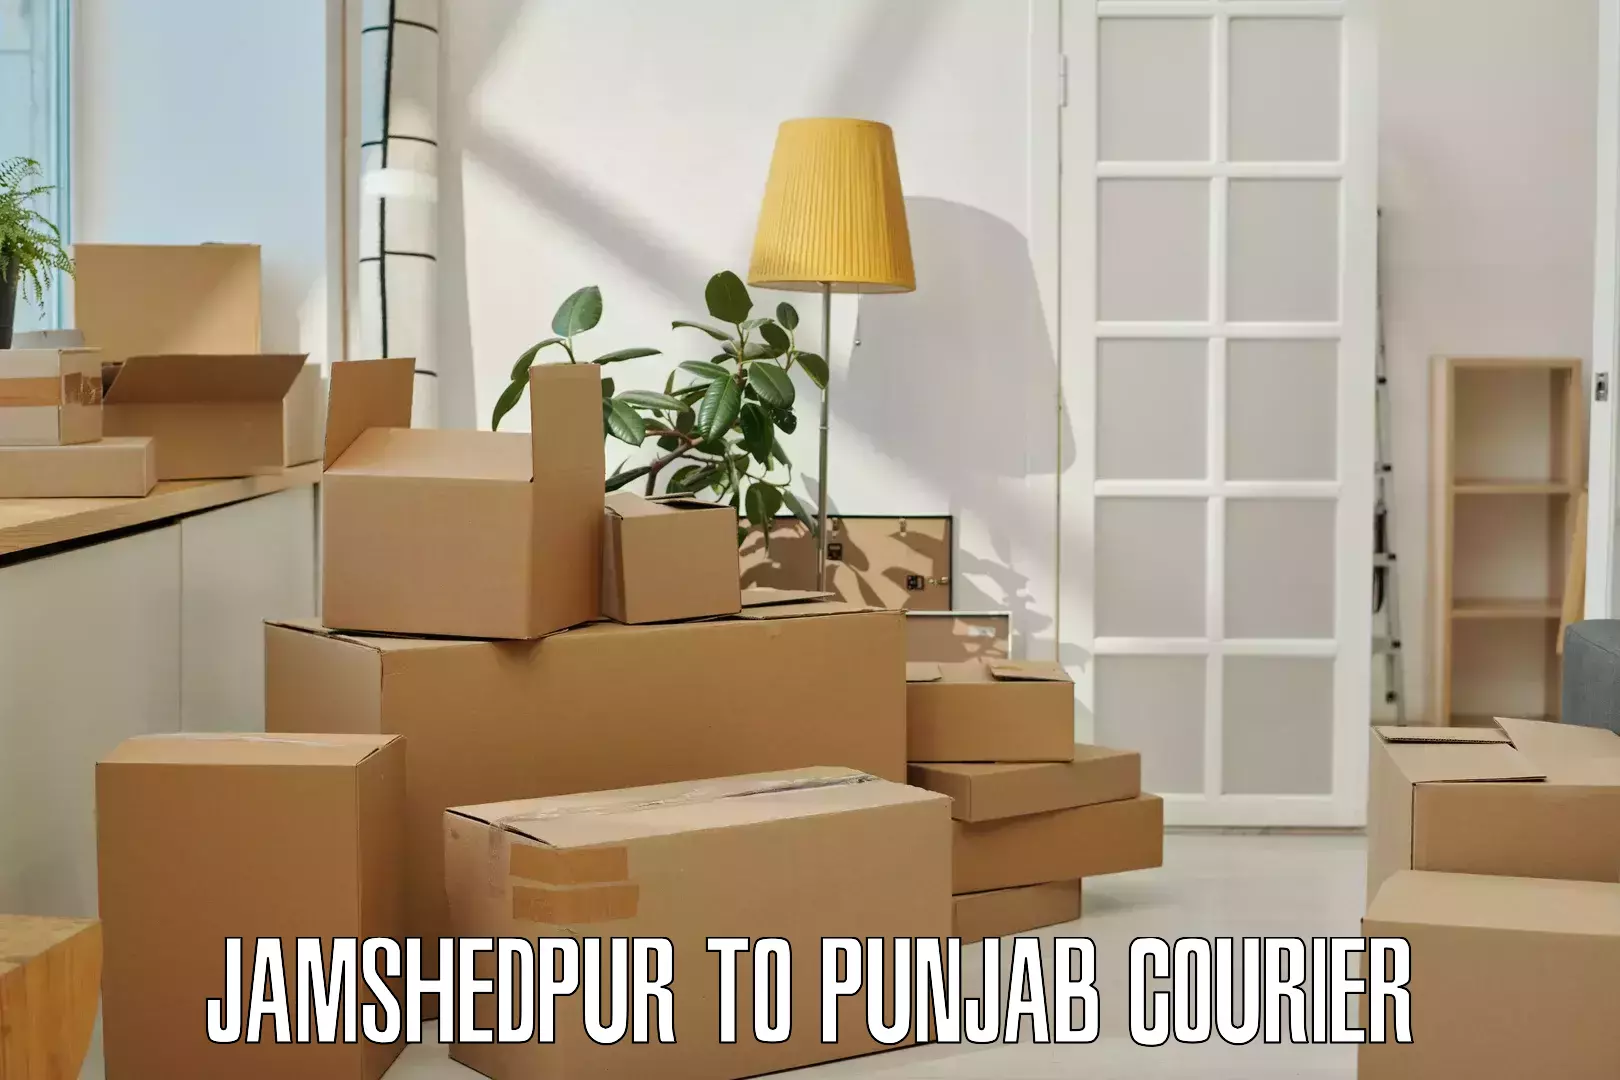 Delivery service partnership Jamshedpur to Punjab